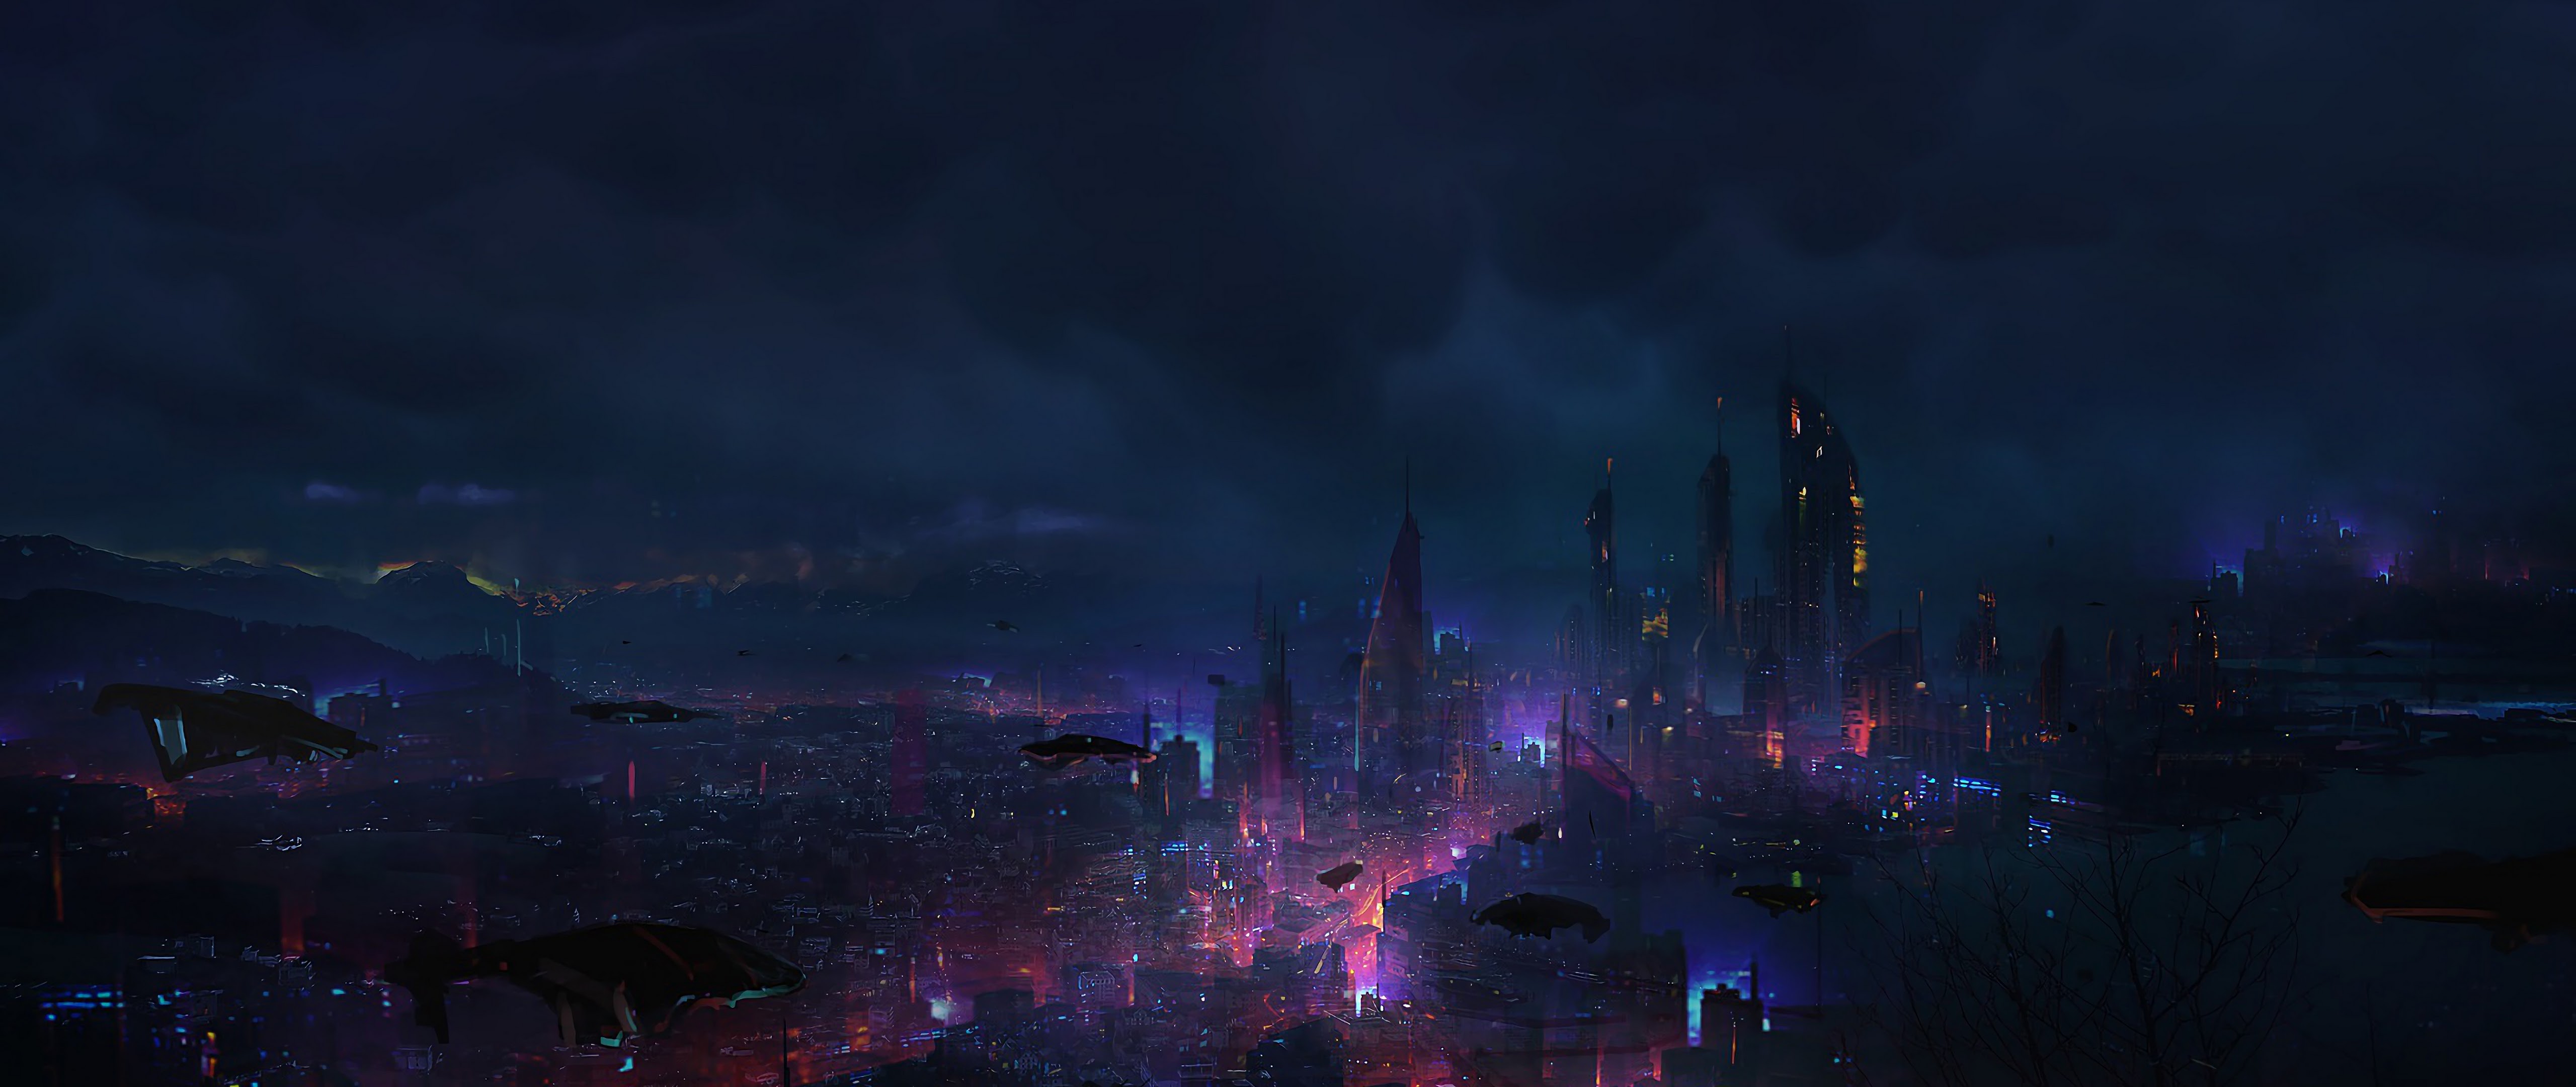 Thưởng thức khung cảnh Cyberpunk City Night Scenery Sci Fi 4K đầy mưa gió giữa đêm tối sẽ đem lại cho bạn những trải nghiệm sống động và cực kỳ ấn tượng. Hãy tải về và sử dụng ngay để cảm nhận sự khác biệt.